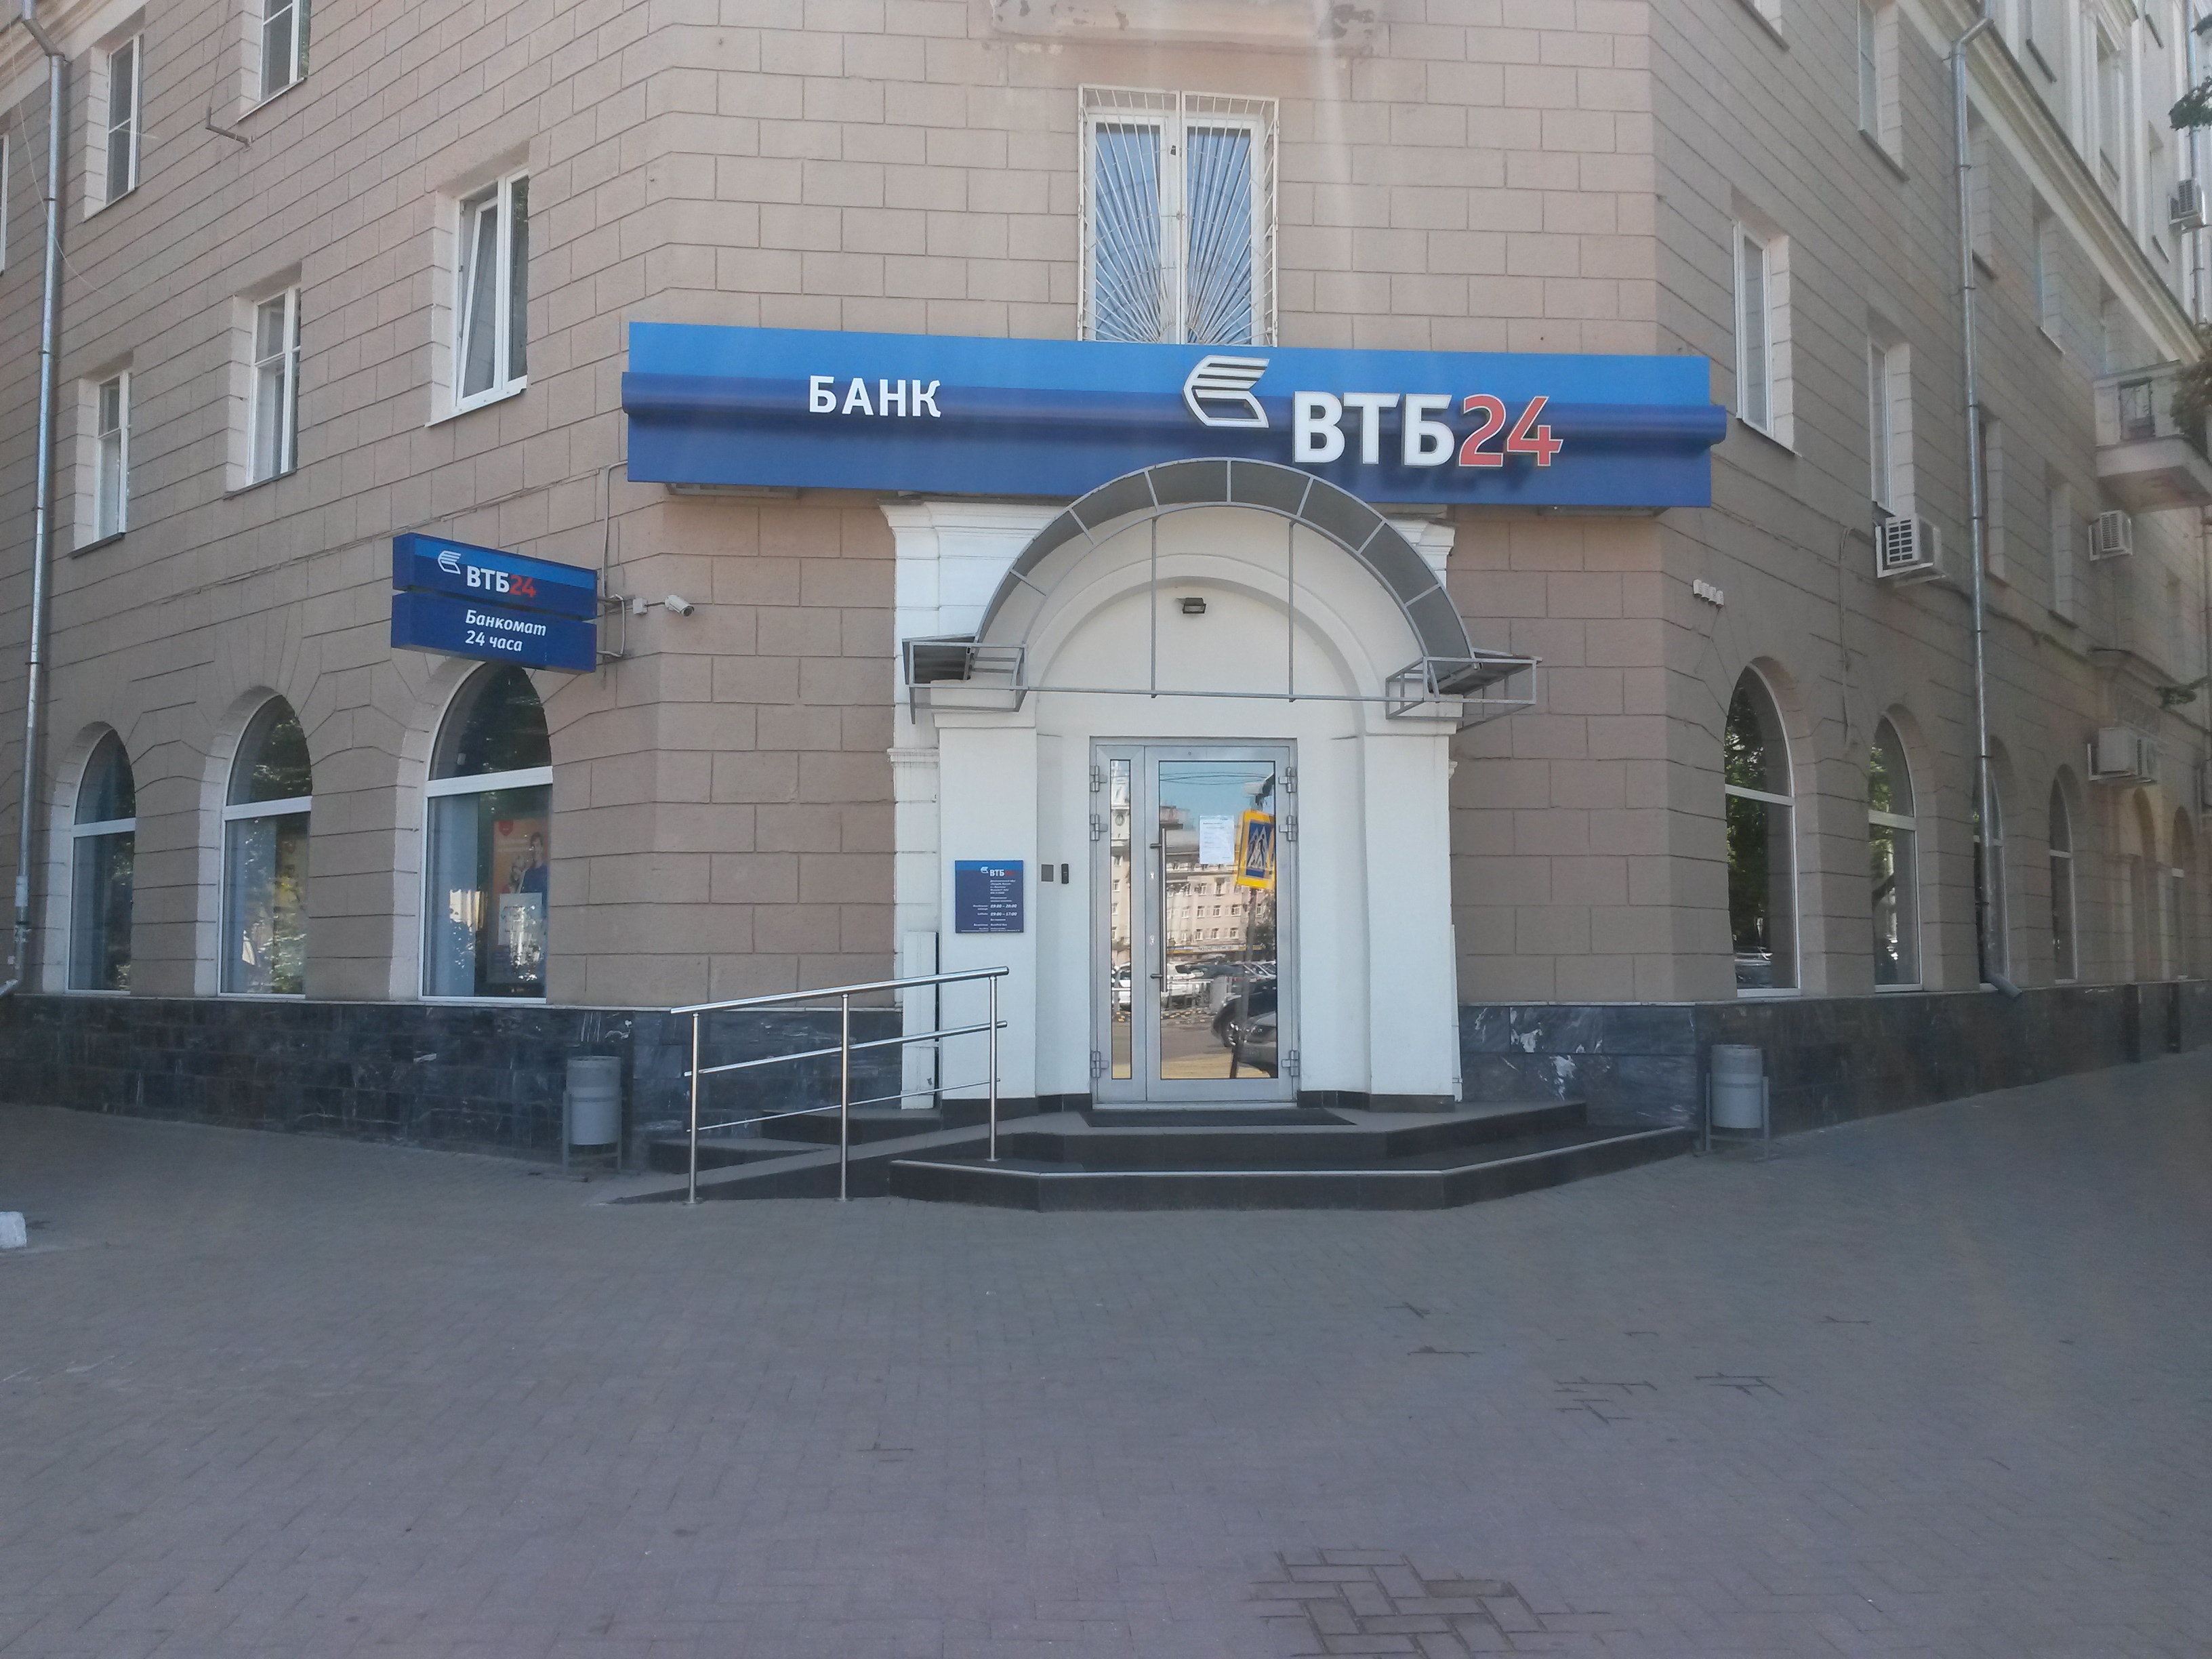 Втб лабинск. ВТБ банк в Махачкале на Танкаева 54. Банк ВТБ Великие Луки. ВТБ банк в Бишкеке.